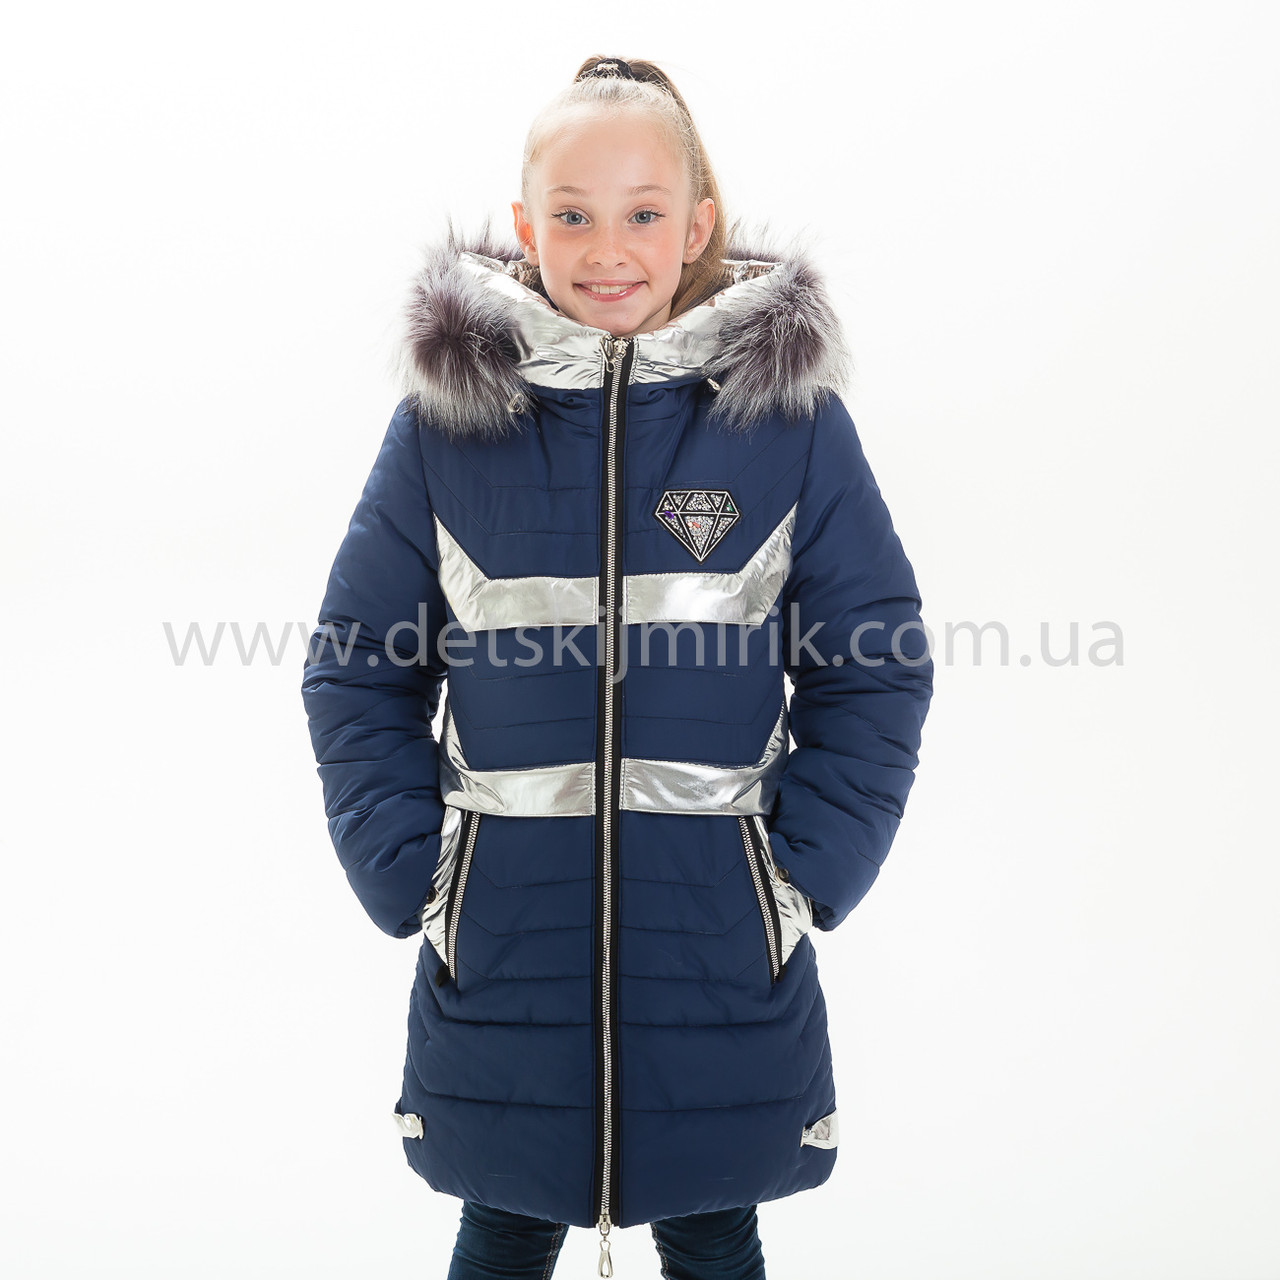 Зимова куртка для дівчинки "Вікторія", Зима 2019 року